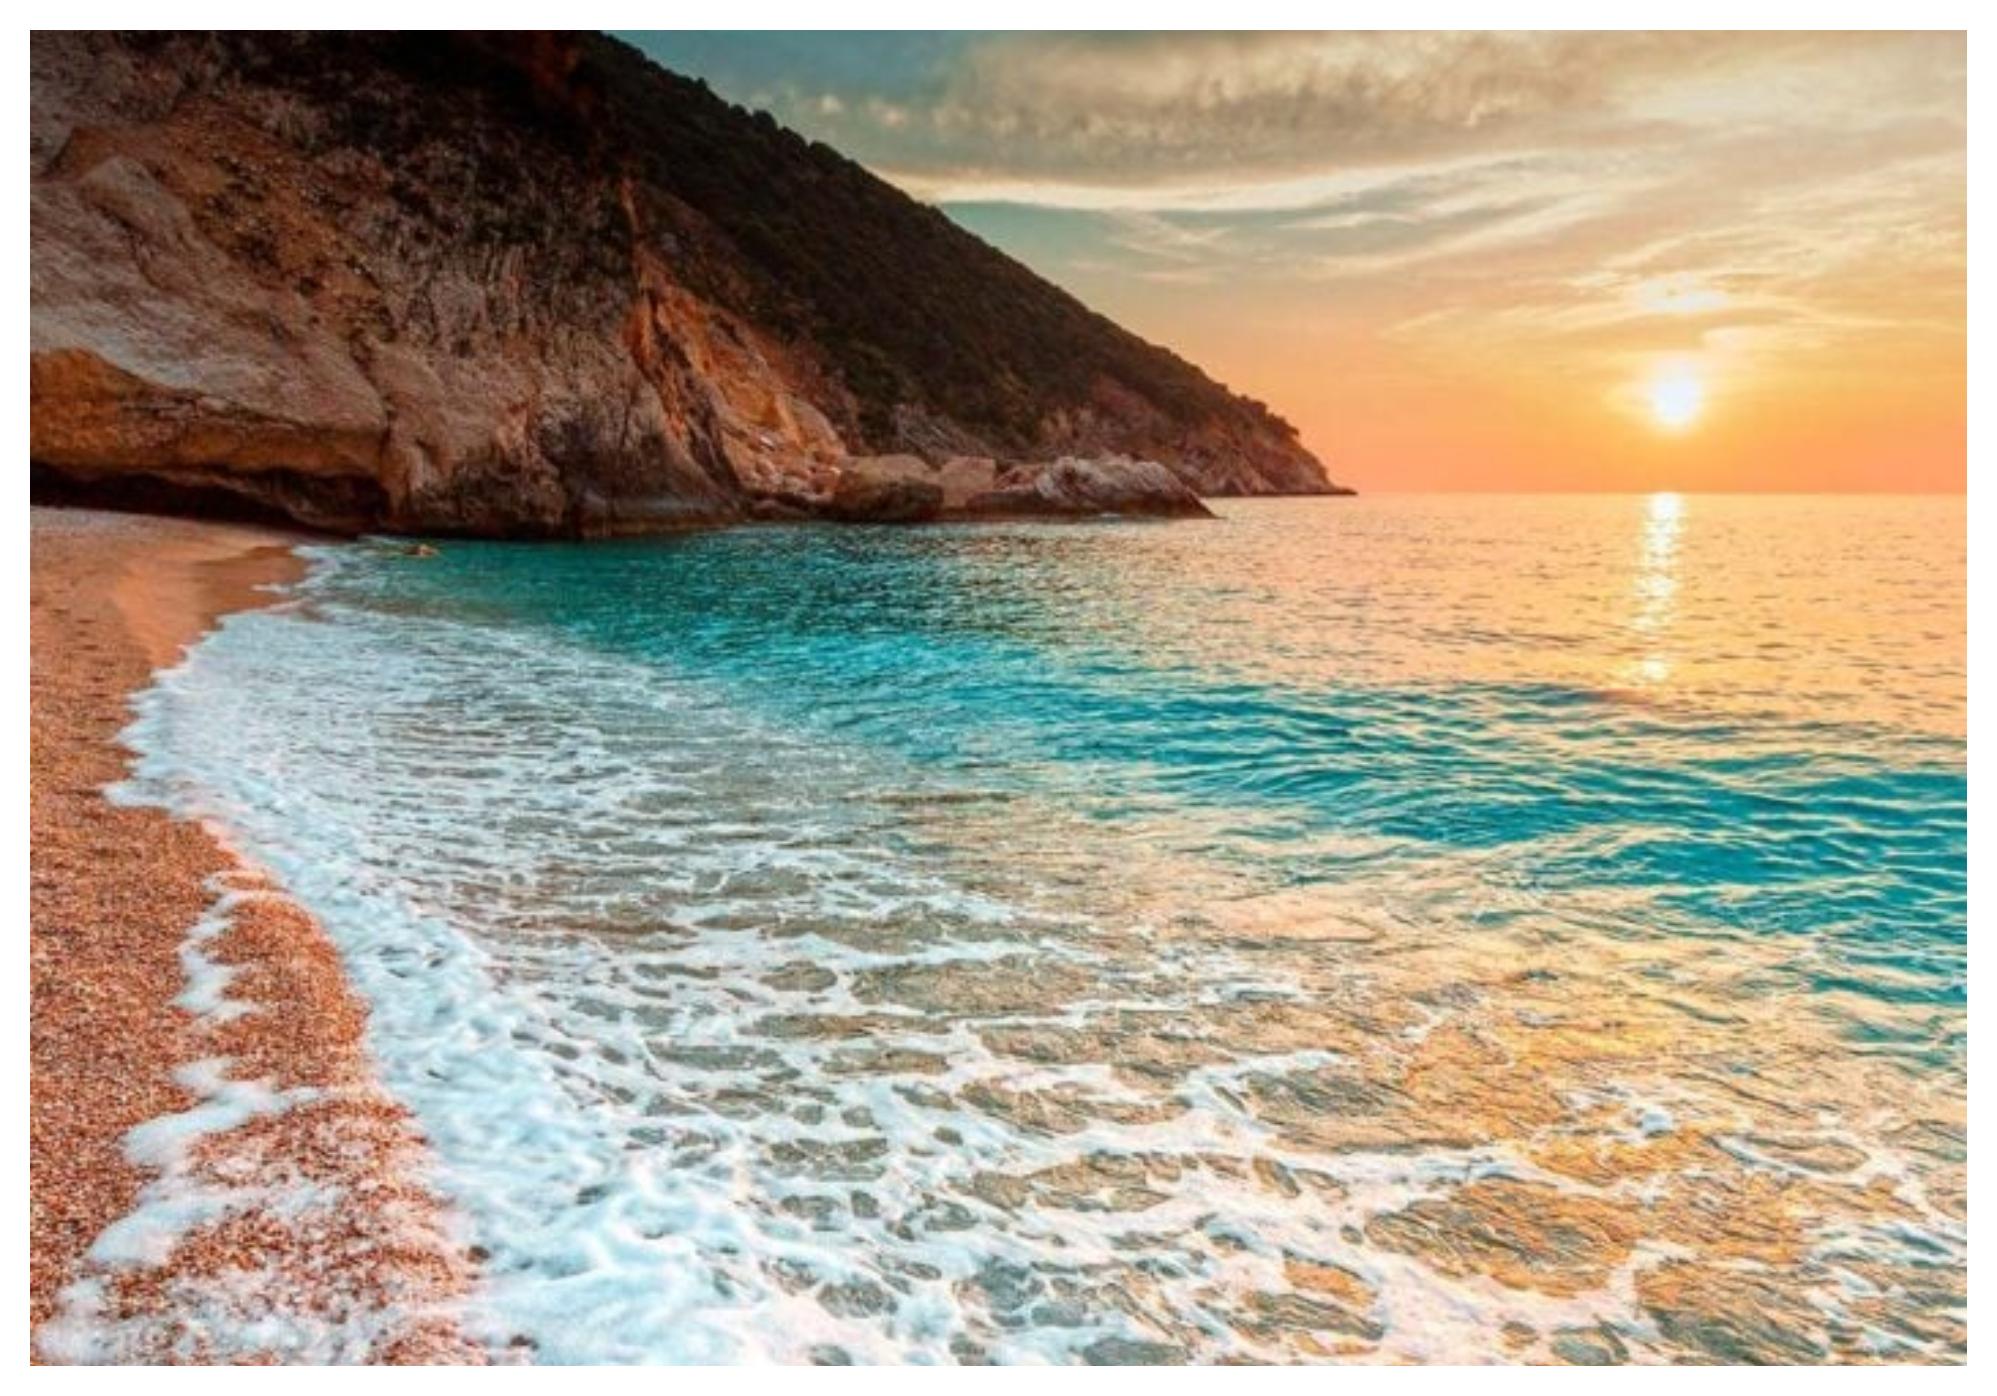 Καλοκαίρι 2023: Η γαλλική Vogue αποθεώνει τις ελληνικές παραλίες